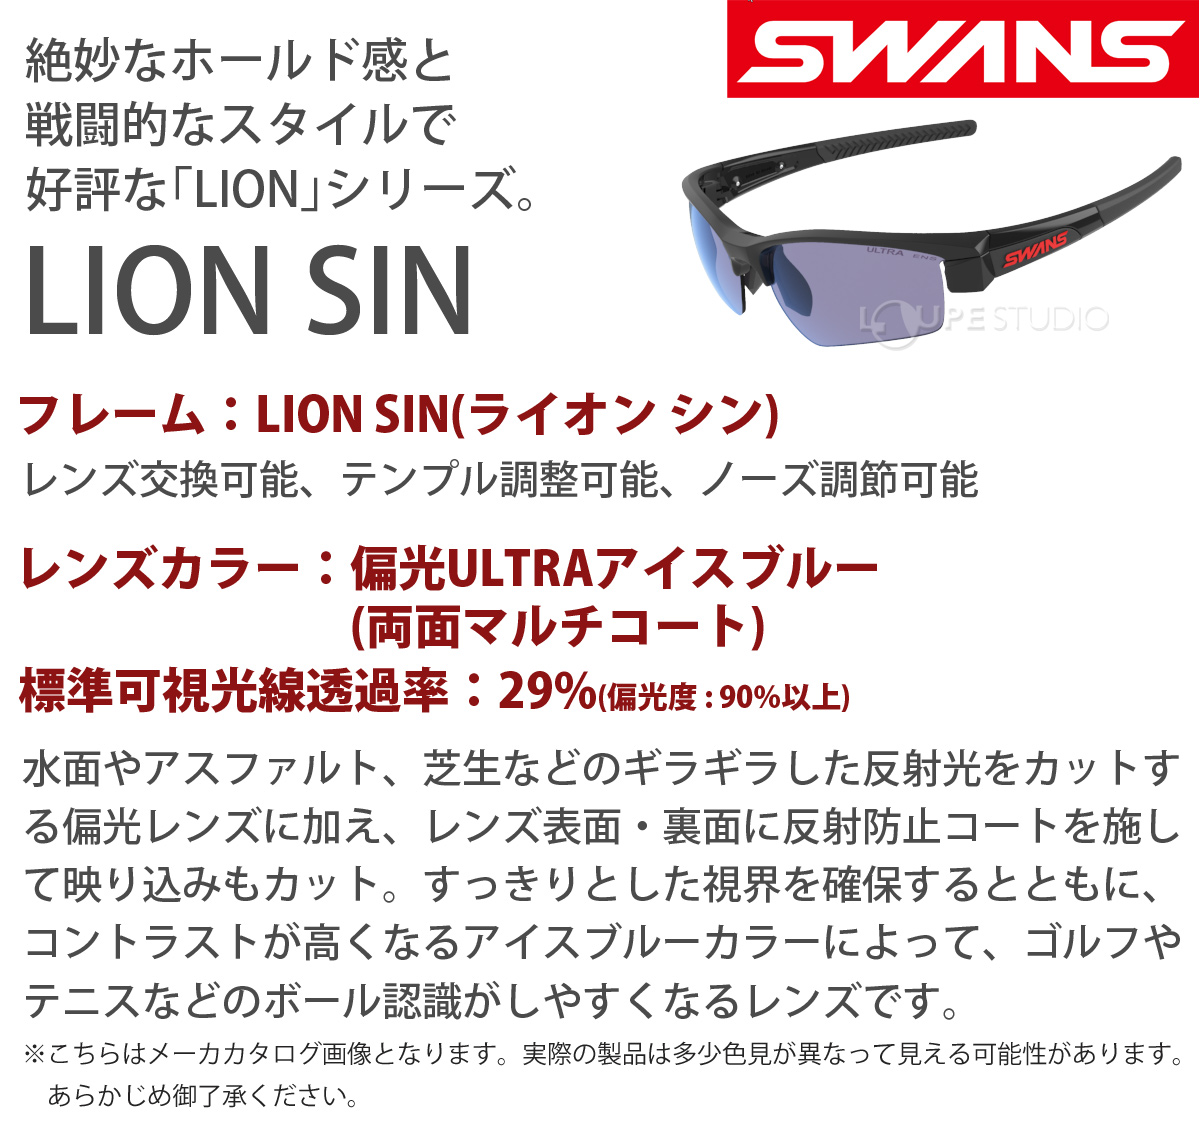 人気ブランド新作豊富 SWANS(スワンズ) スポーツ サングラス ライオンシン ミラーレンズ モデル LI SIN-1701 BK ブラック×ブラック×ブラック